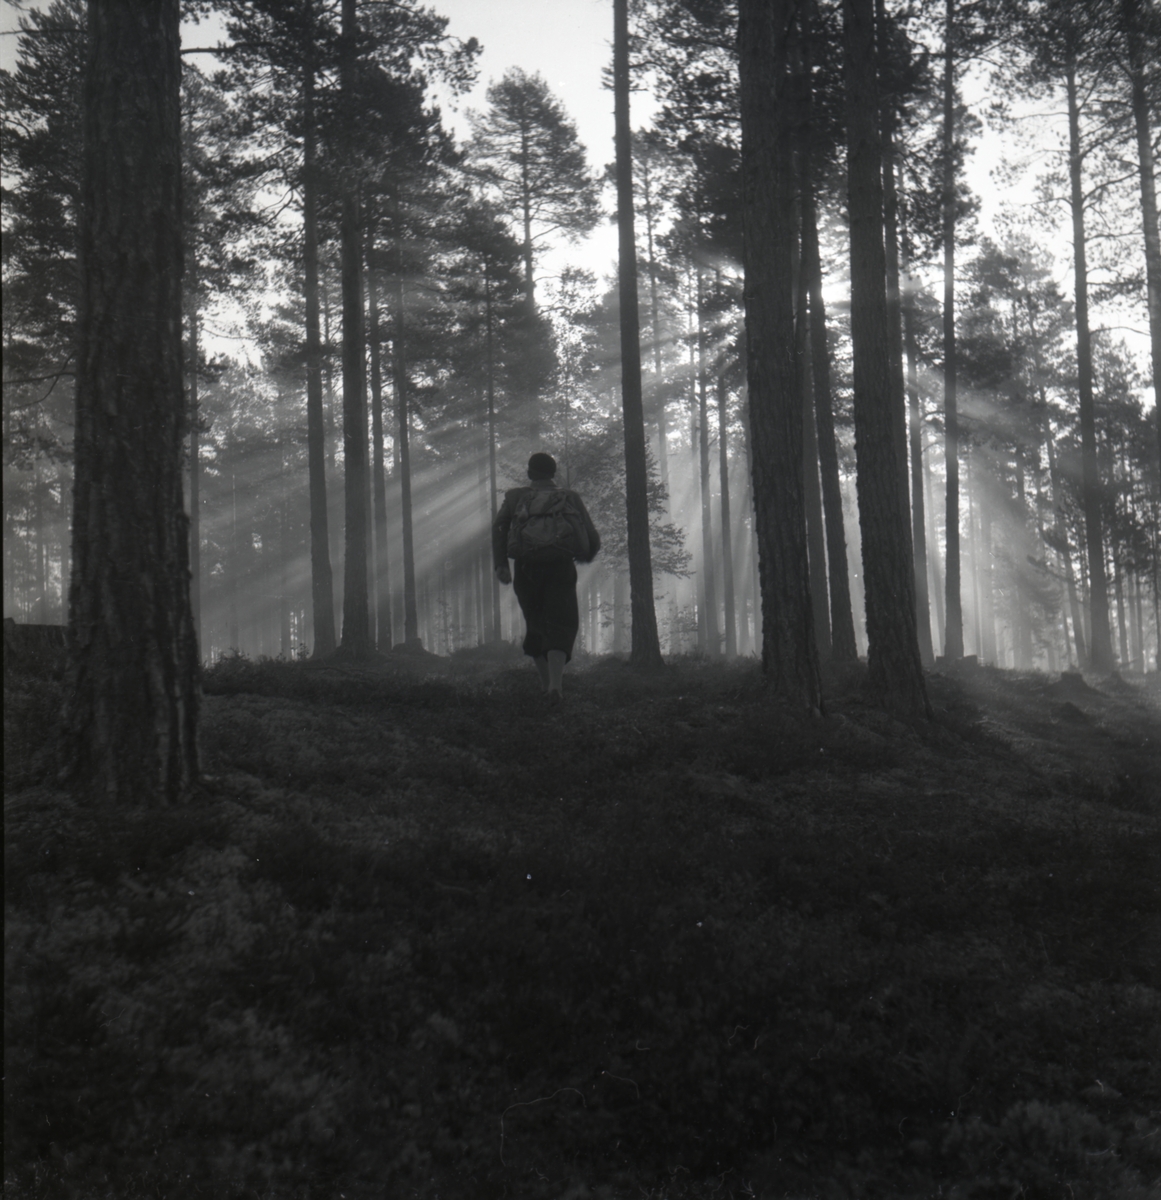 Hilding med ryggsäck vandrar i solljus och dimma. Det är morgon i skogen på Kolsvedjaberget Ljusdal, Hälsingland september 1949.